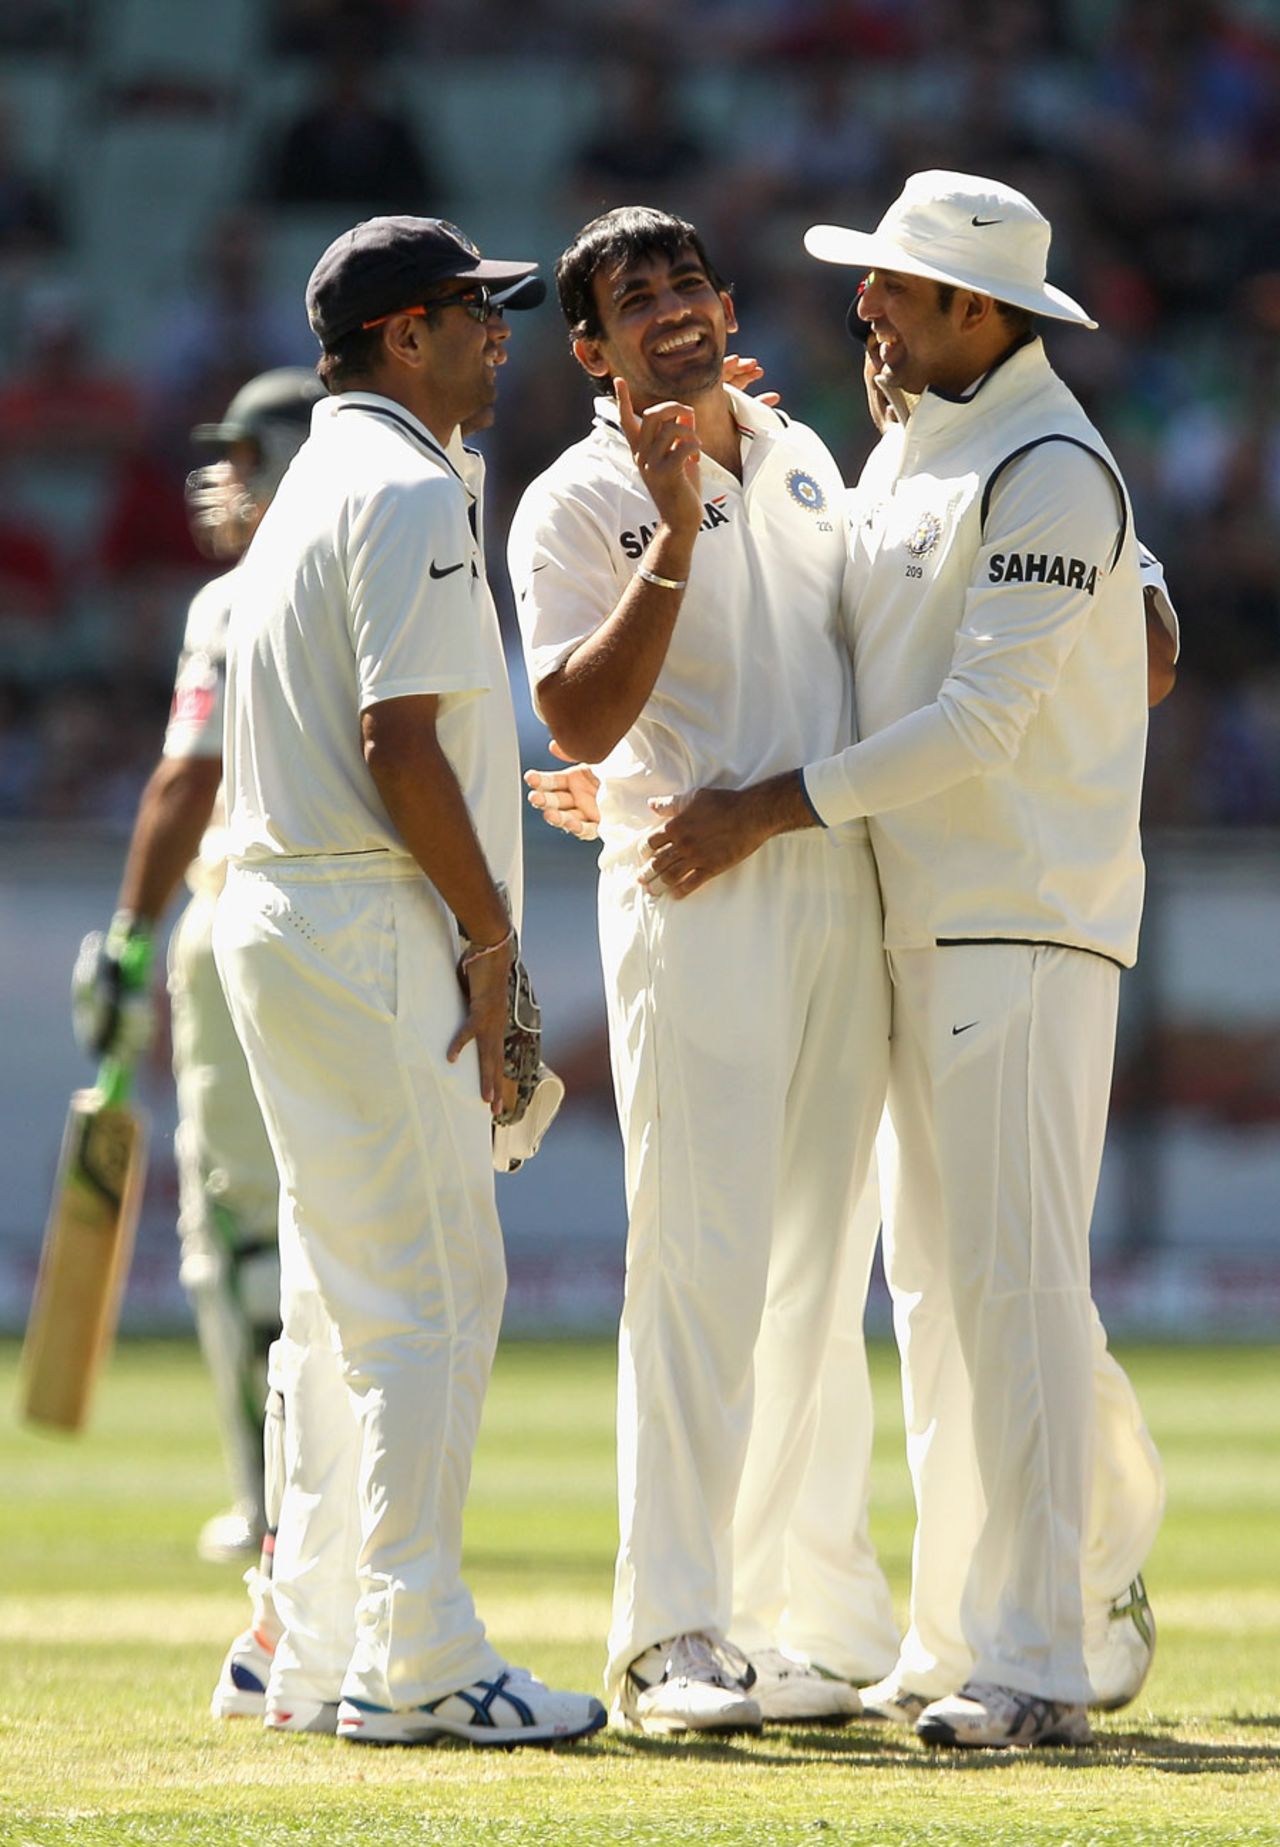 Zaheer Khan got rid of Brad Haddin, Australia v India, 1st Test, Melbourne, 3rd day, December 28, 2011